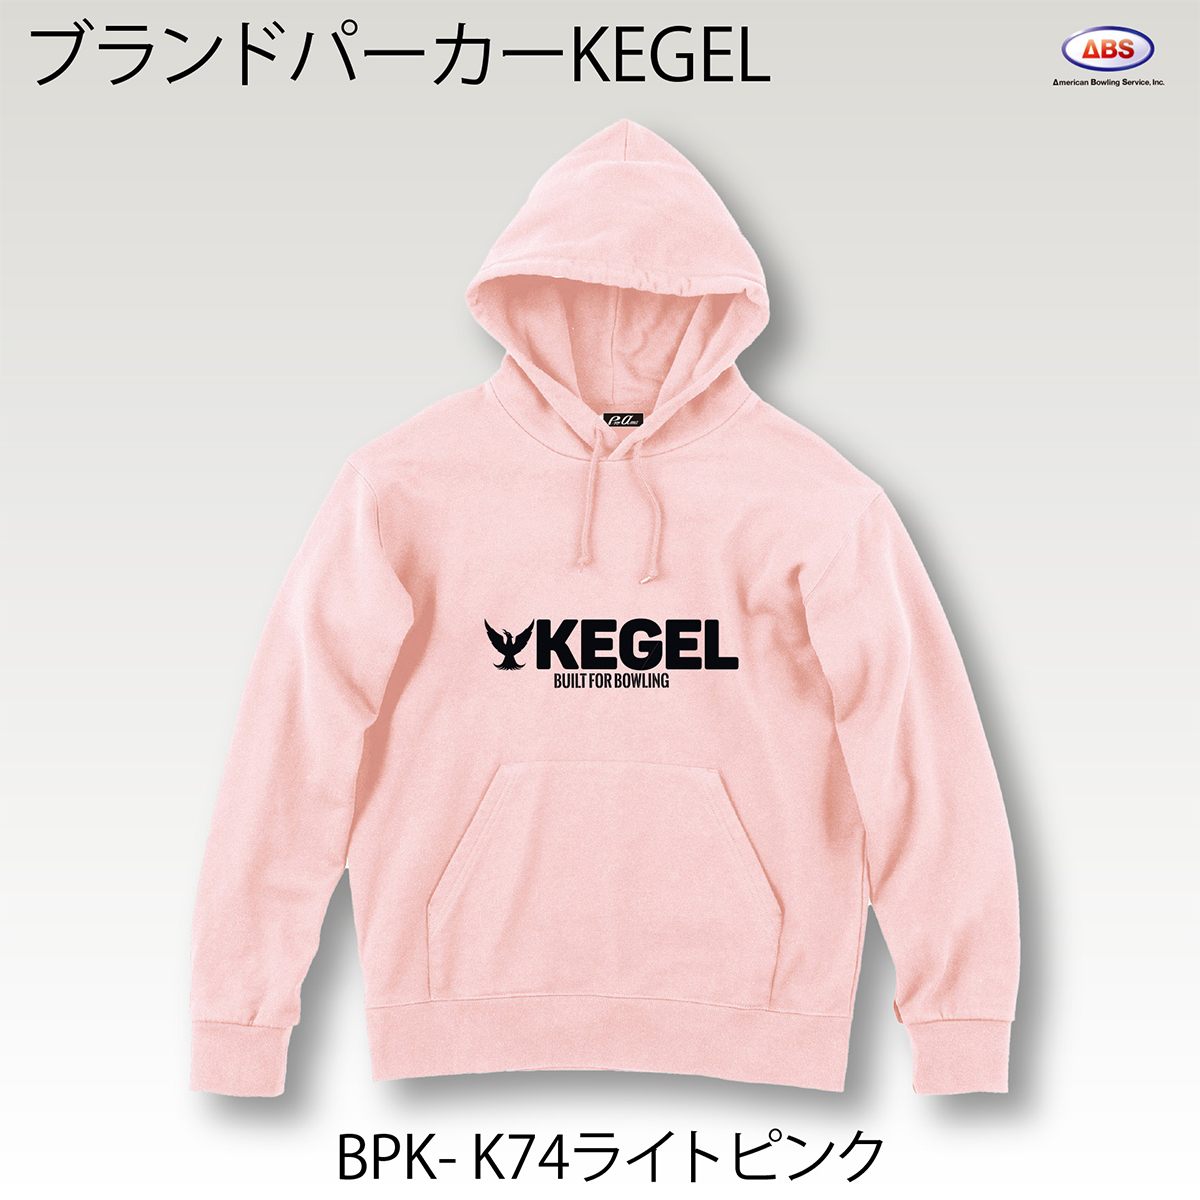 ブランドロゴパーカー(KEGEL)